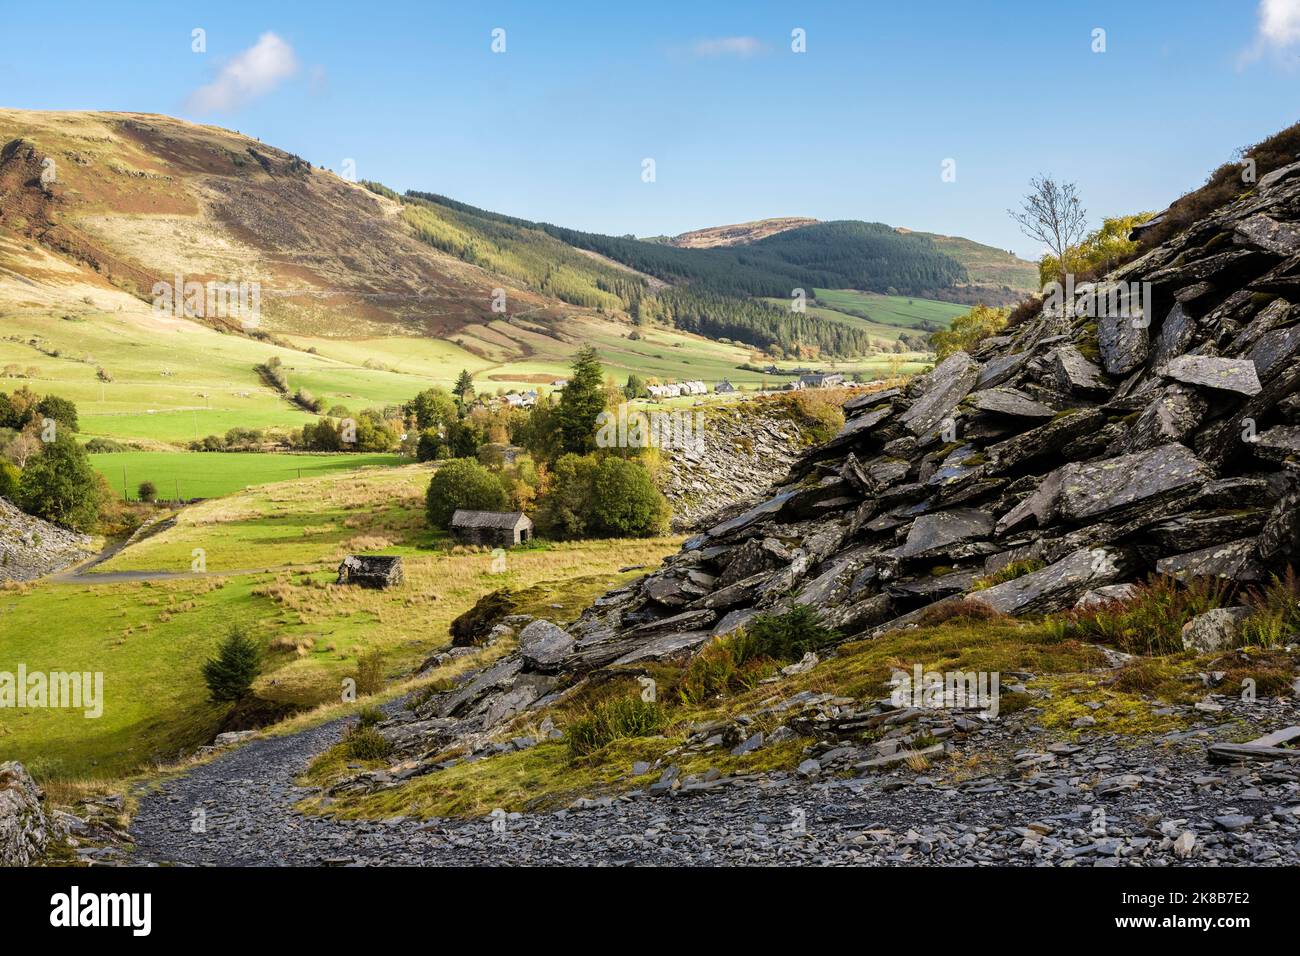 Sentier d'ardoise à travers le tas de scories de la carrière de Rhiw Fachno au-dessus du village dans la vallée de Snowdonia. MCG Penmachno, Betws-y-Coed, Conwy, nord du pays de Galles, Royaume-Uni, Grande-Bretagne Banque D'Images